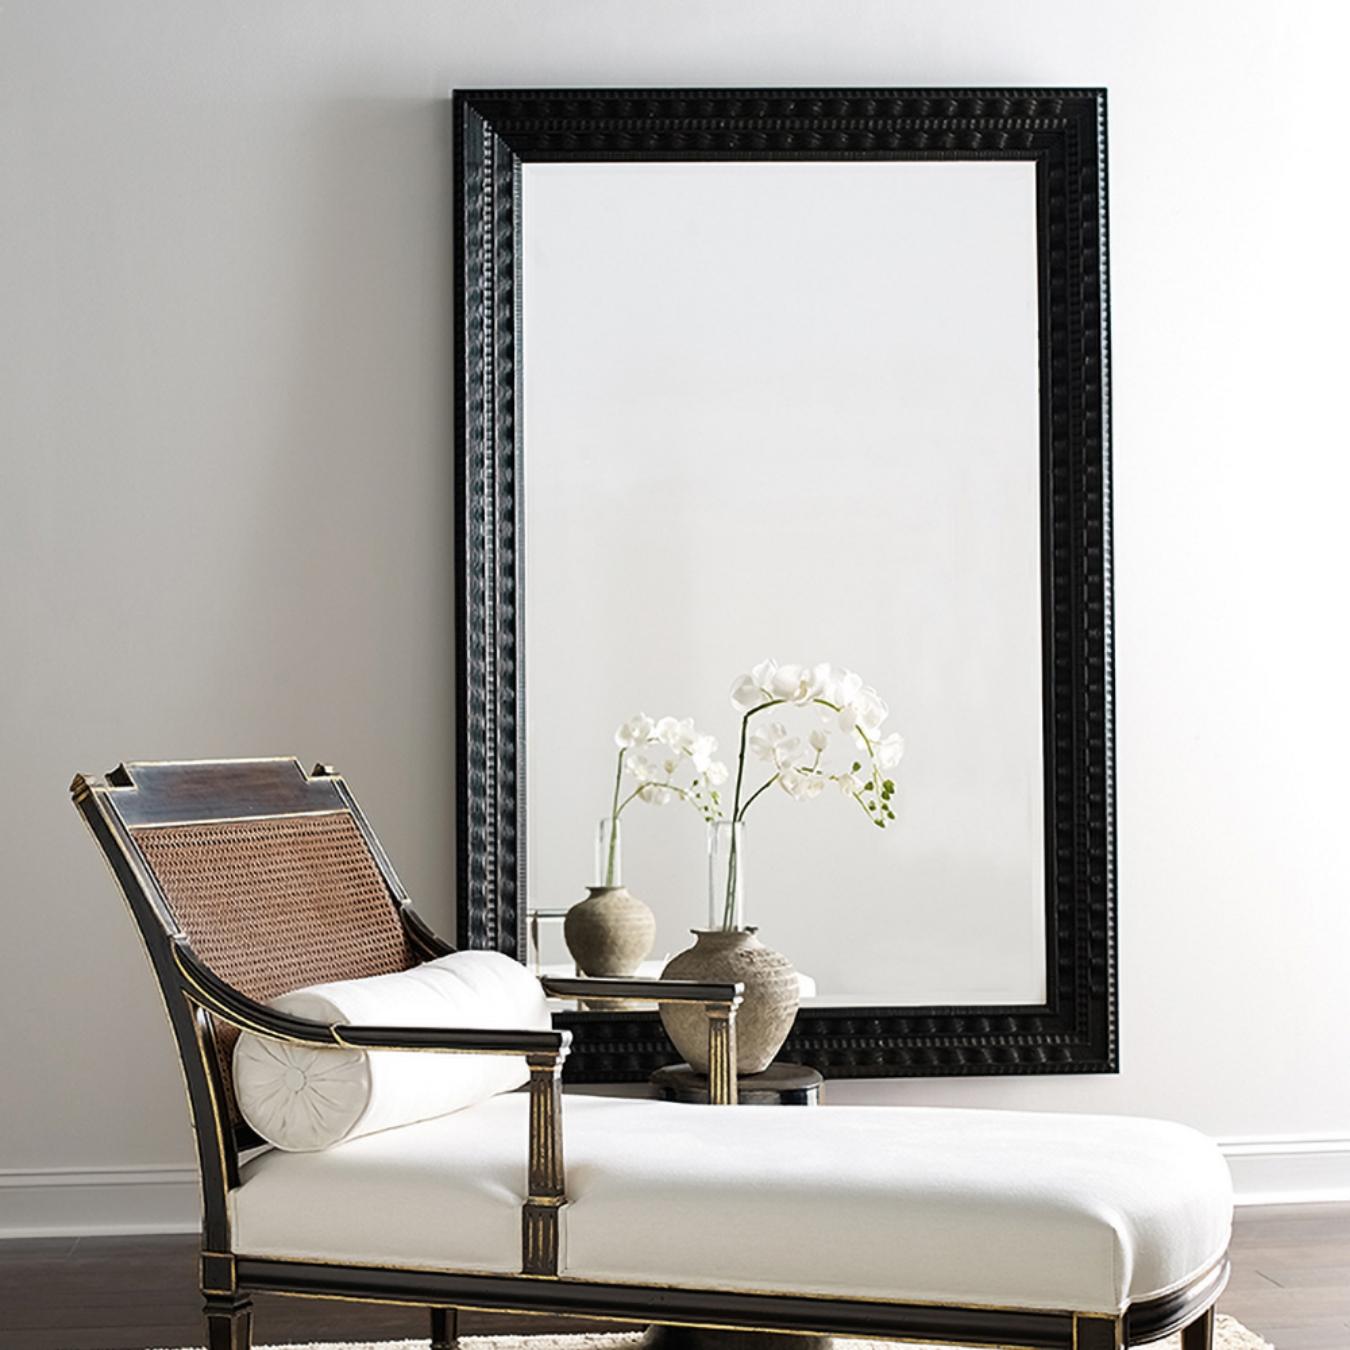 Dieser rechteckige Spiegel ist aus holländischen Leisten gefertigt. Mit seiner dunklen Holzoberfläche verleiht er jedem Raum einen raffinierten und schlichten Look.
  